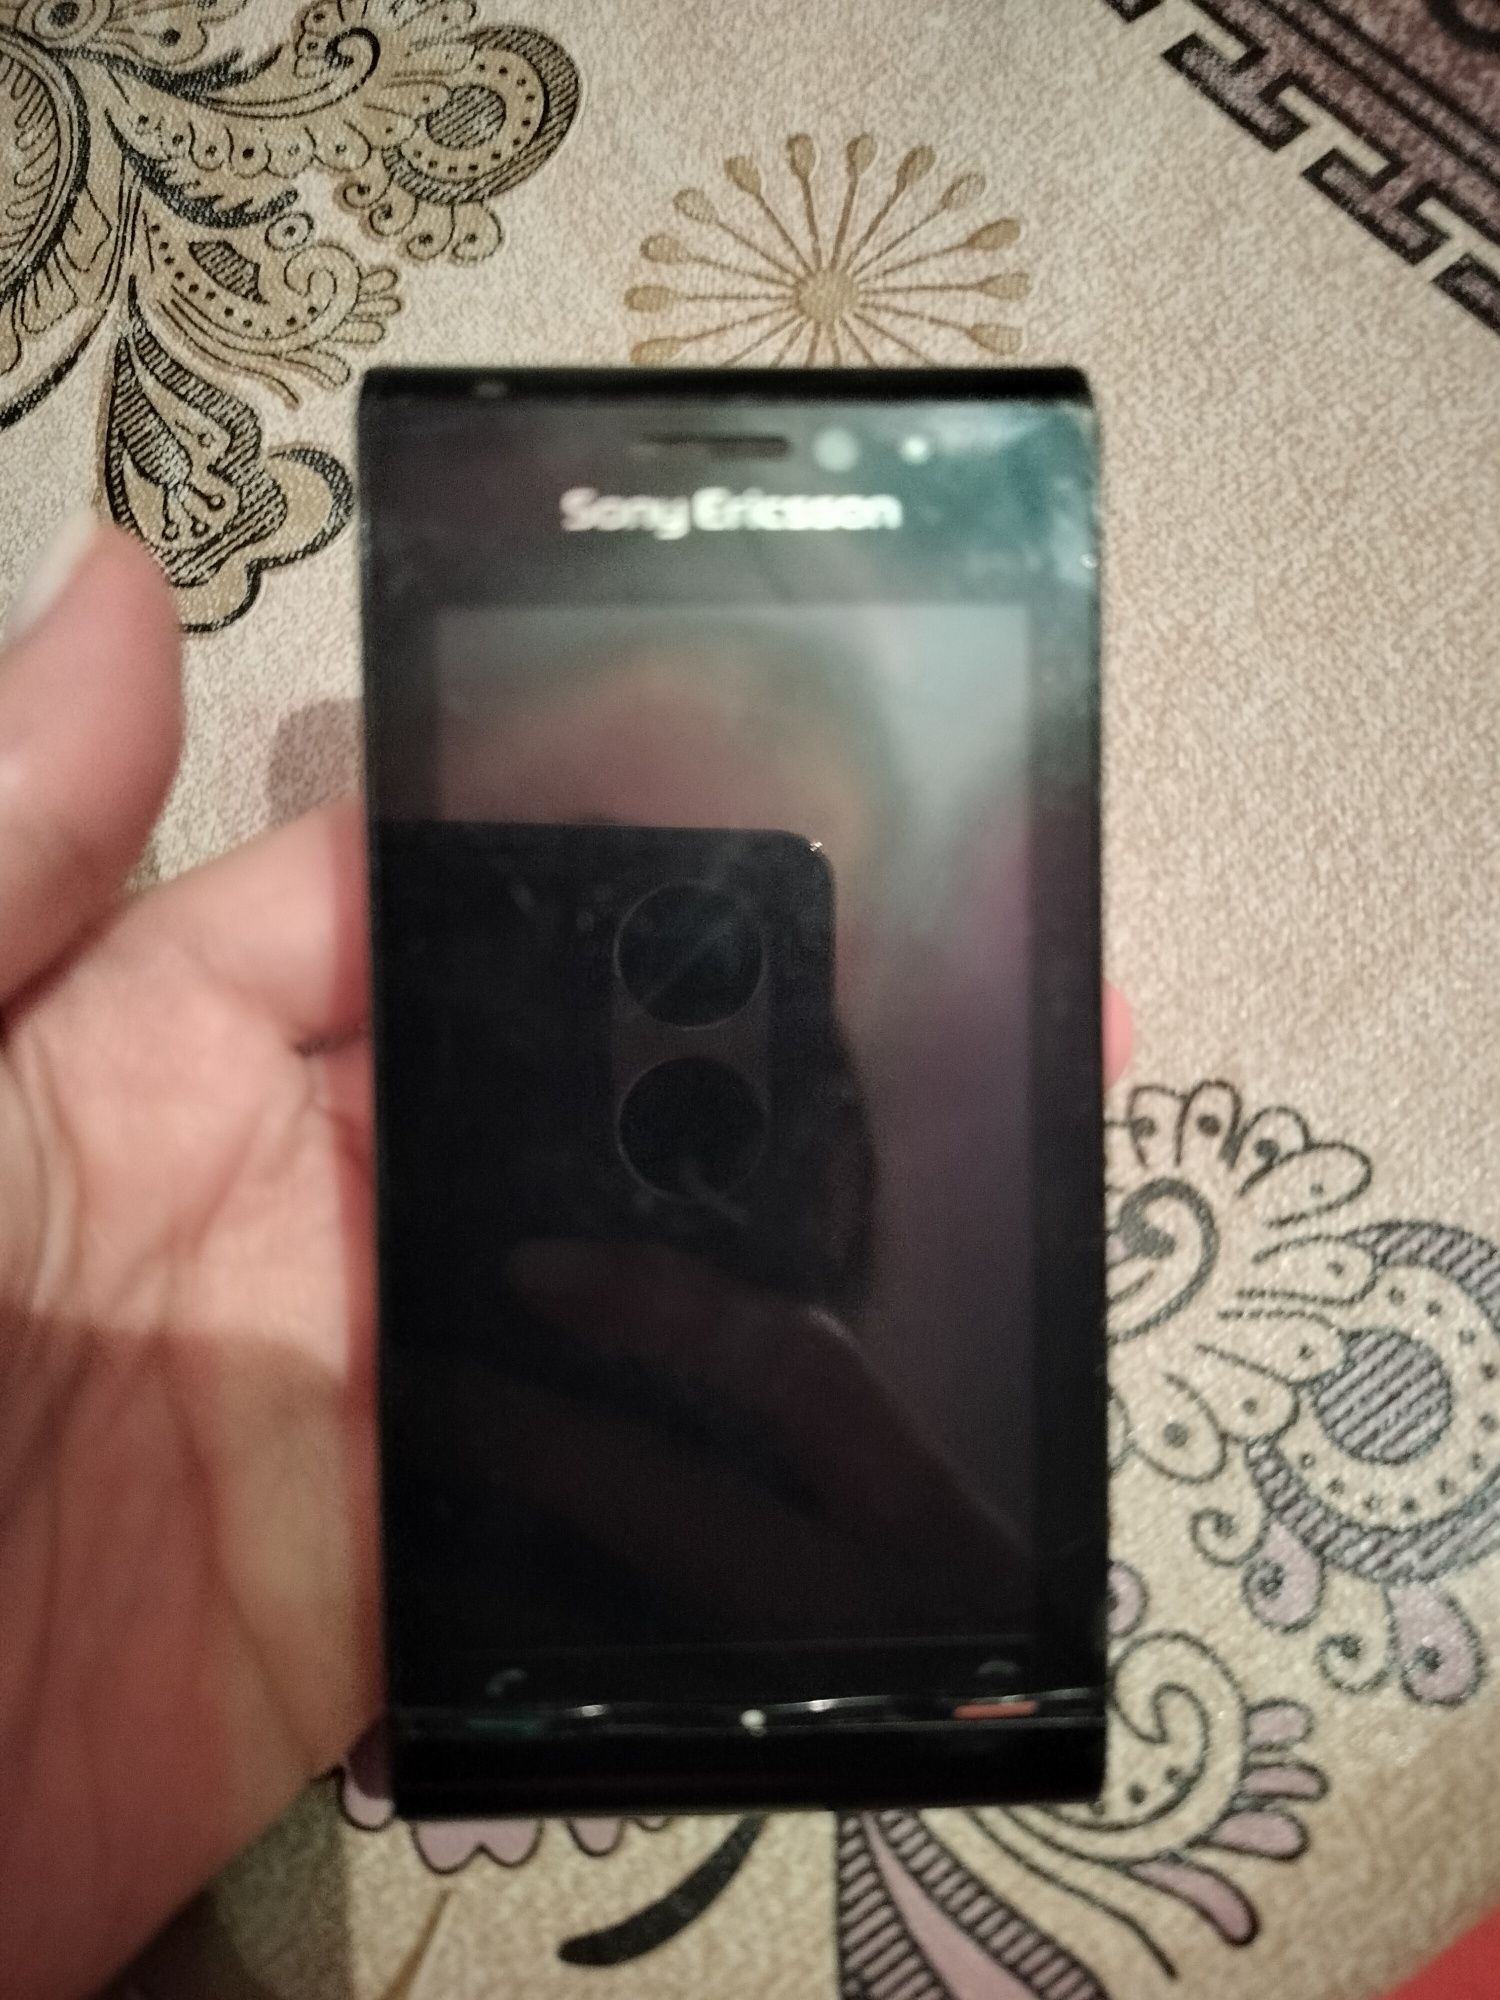 Sony Ericsson телефон